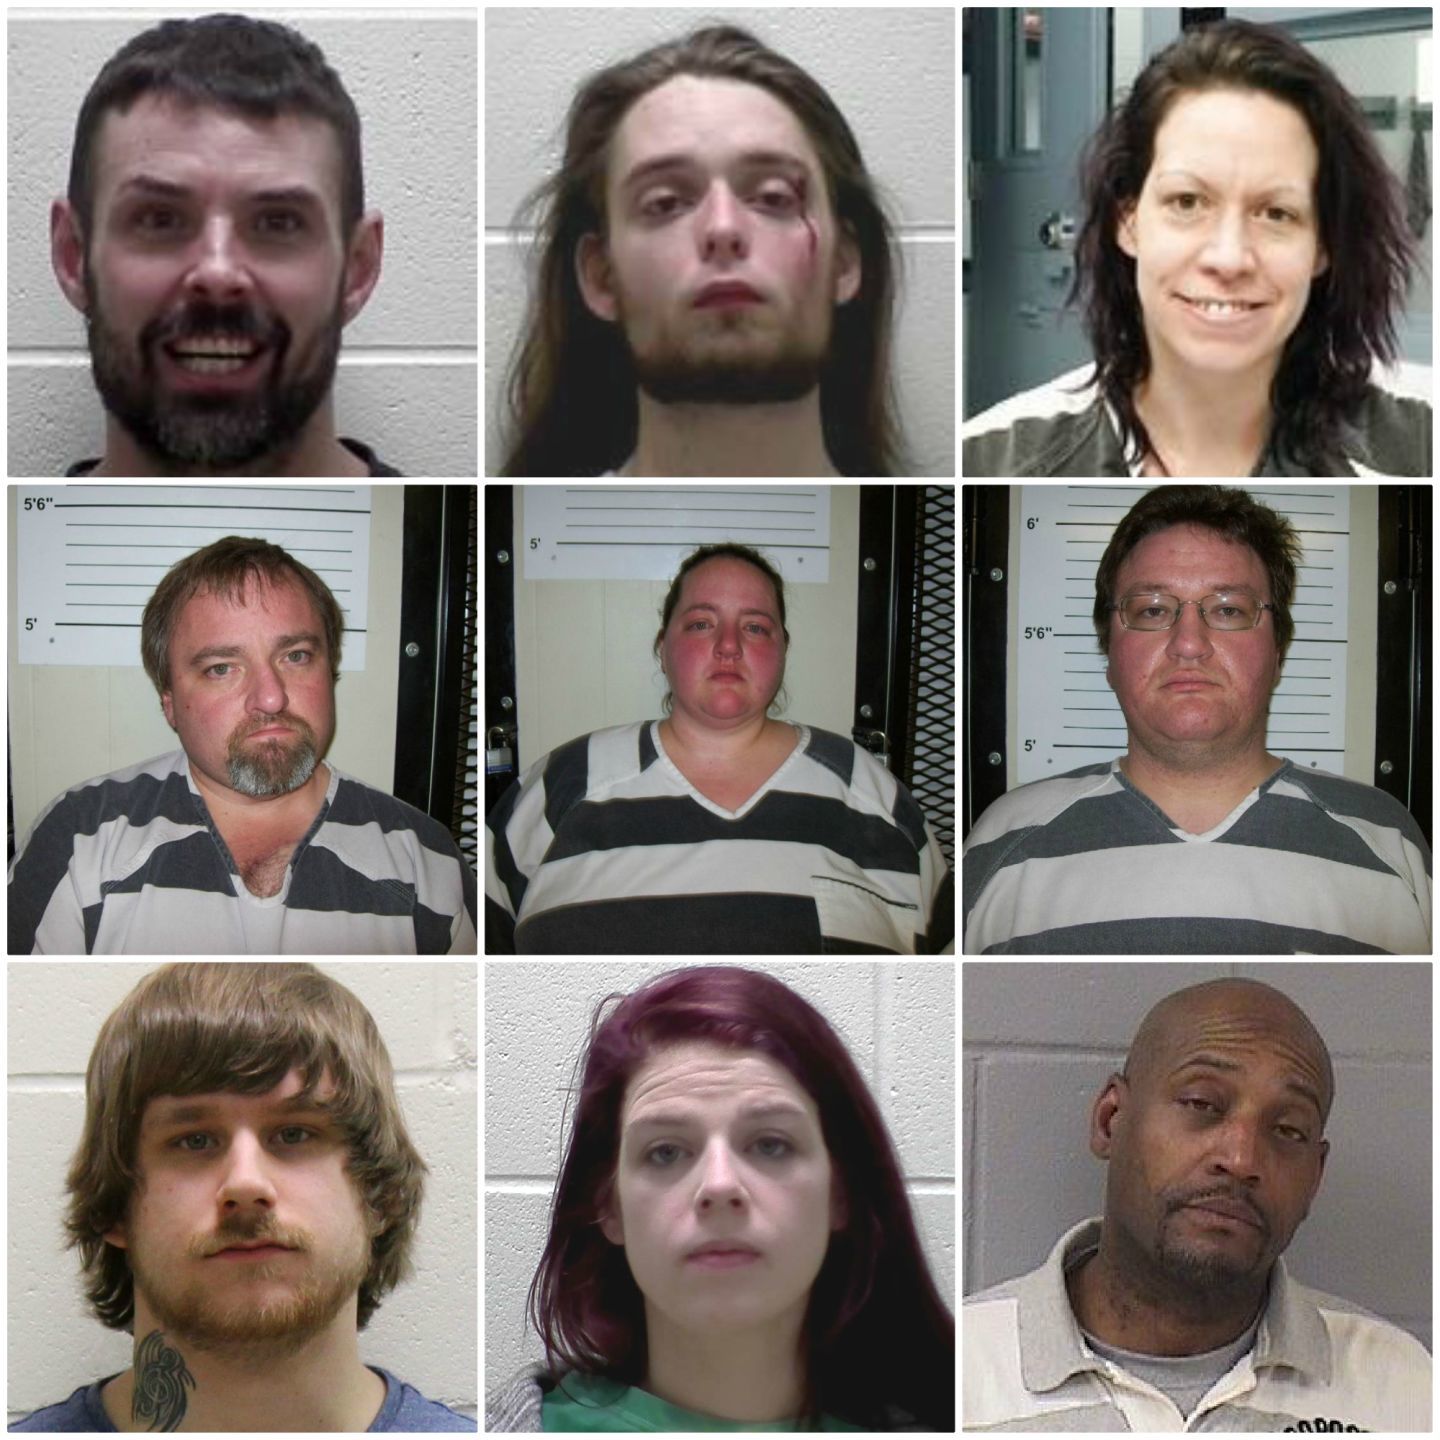 81 escorts found in Nashville TN, United States